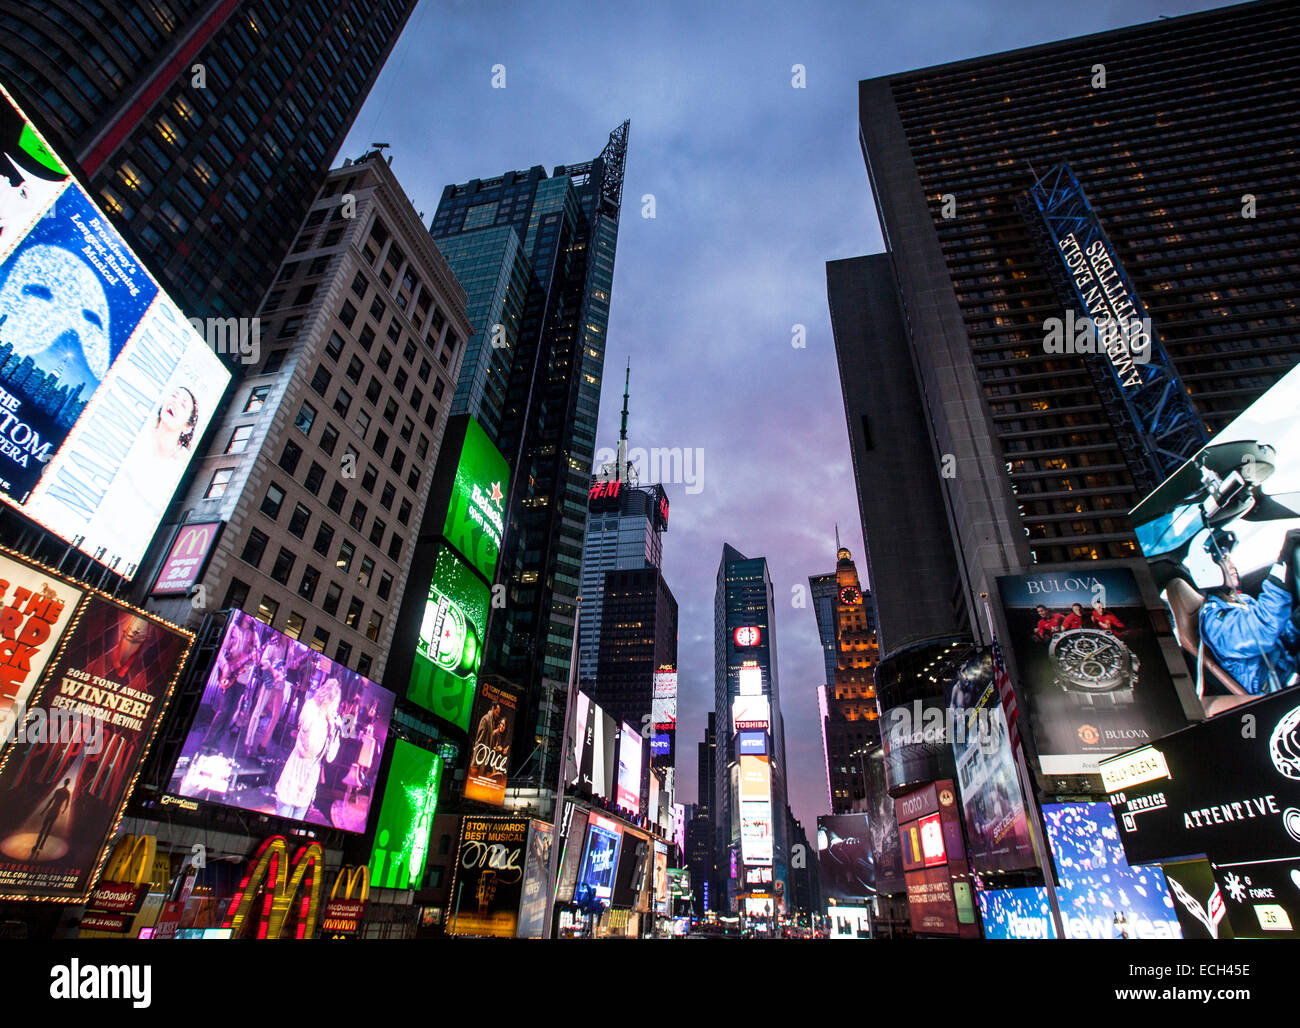 Enseignes lumineuses, publicité à Times Square, carrefour de Broadway et la Septième Avenue, Manhattan, New York, United States Banque D'Images